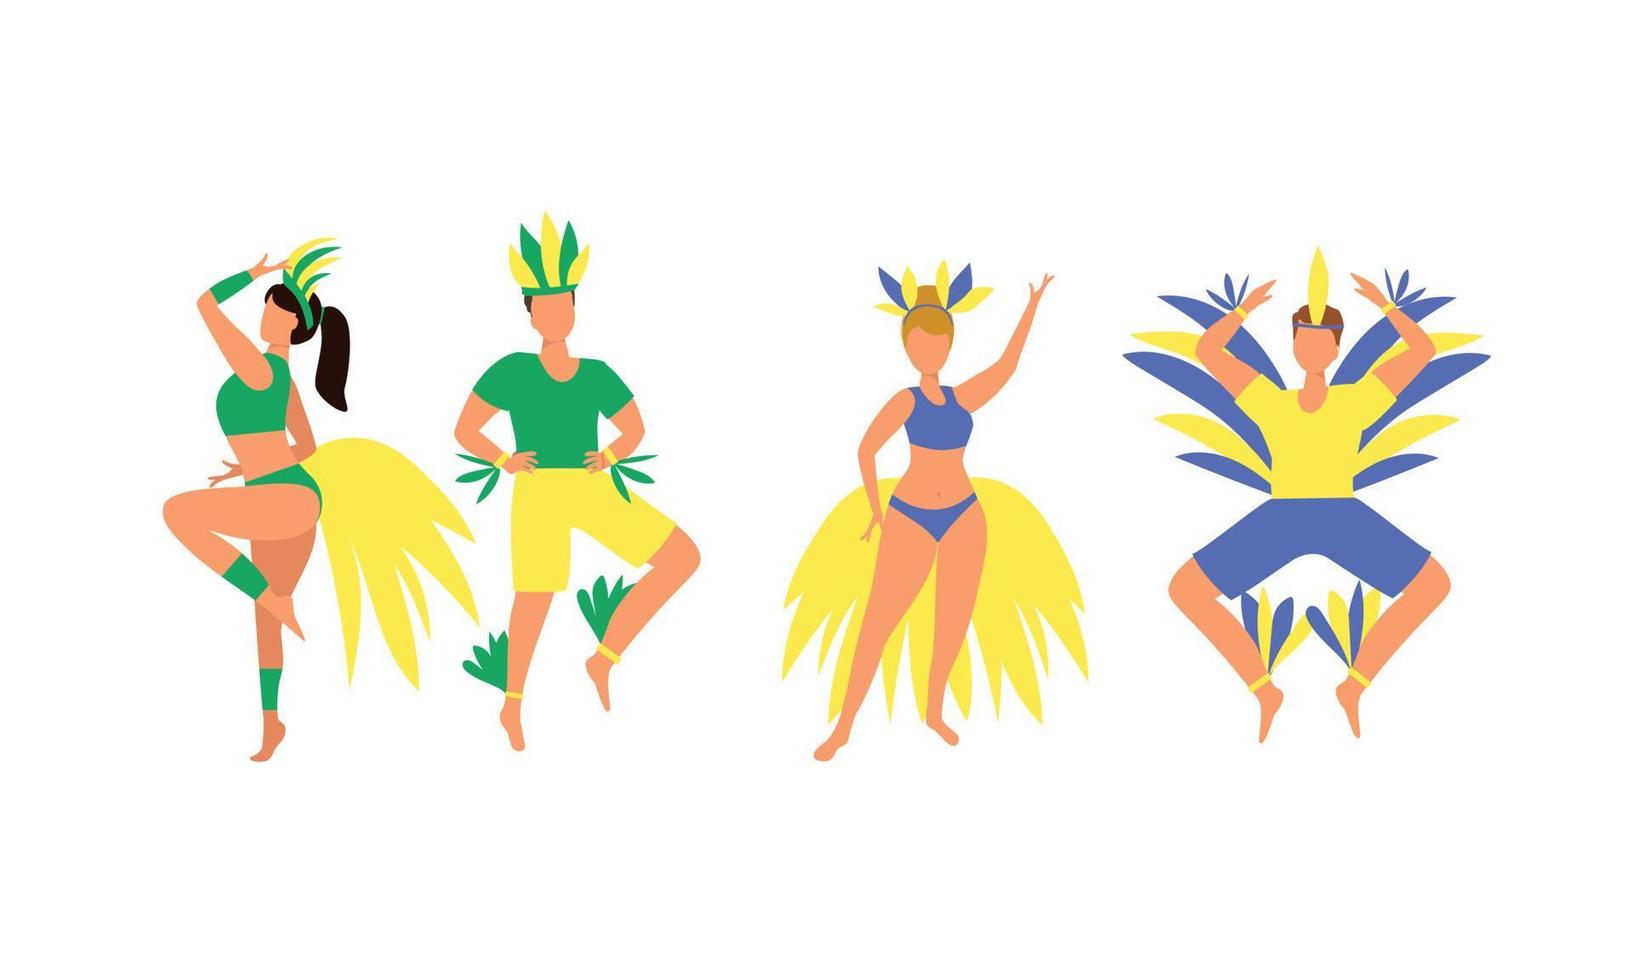 uppsättning av människor i karneval kostymer. man och kvinna i karneval kostym med fjädrar. Brasilien karneval kostym. vektor illustration.